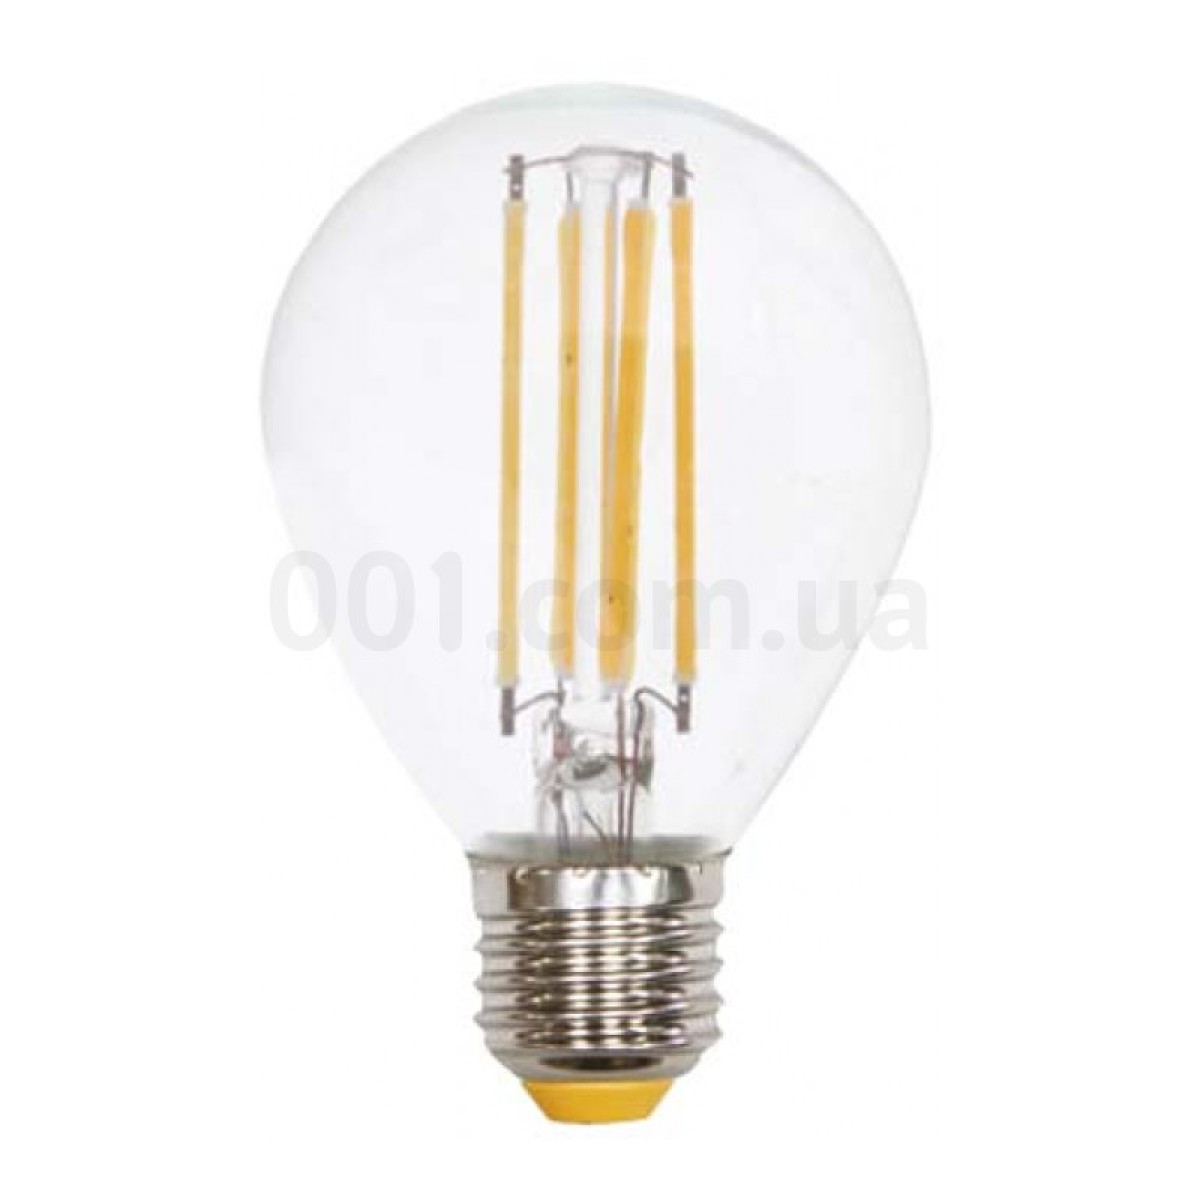 Світлодіодна лампа LB-61 G45 (куля) філамент 4Вт 2700K E27, Feron 256_256.jpg